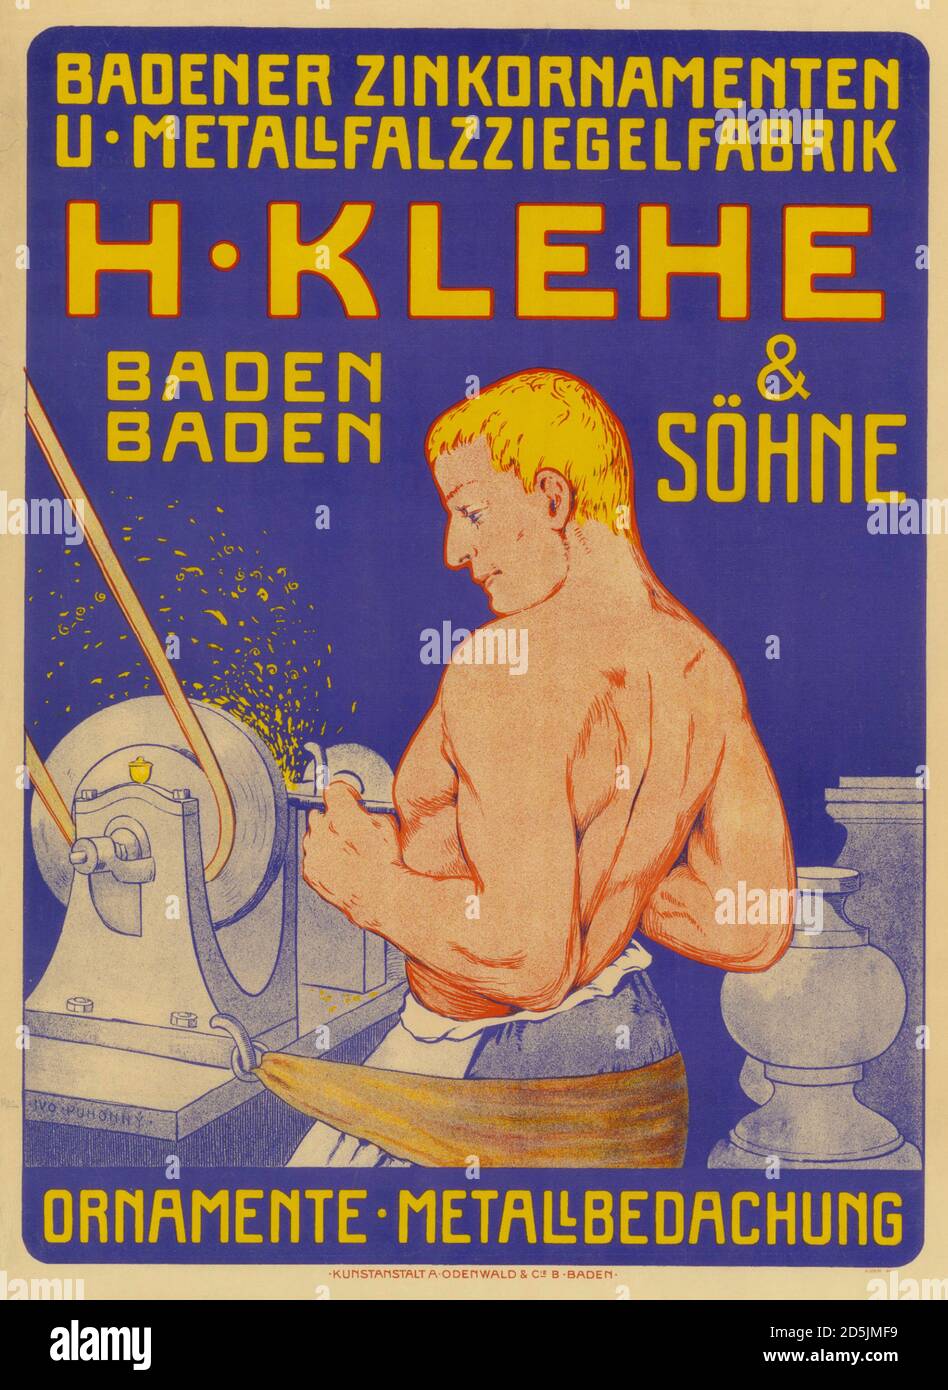 Badener Zinkornamenten u - Metallfalzziegelfabrik. H. Klehe & Söhne, Baden. 1902. By Ivo Puhonny (1876-1940) Stock Photo